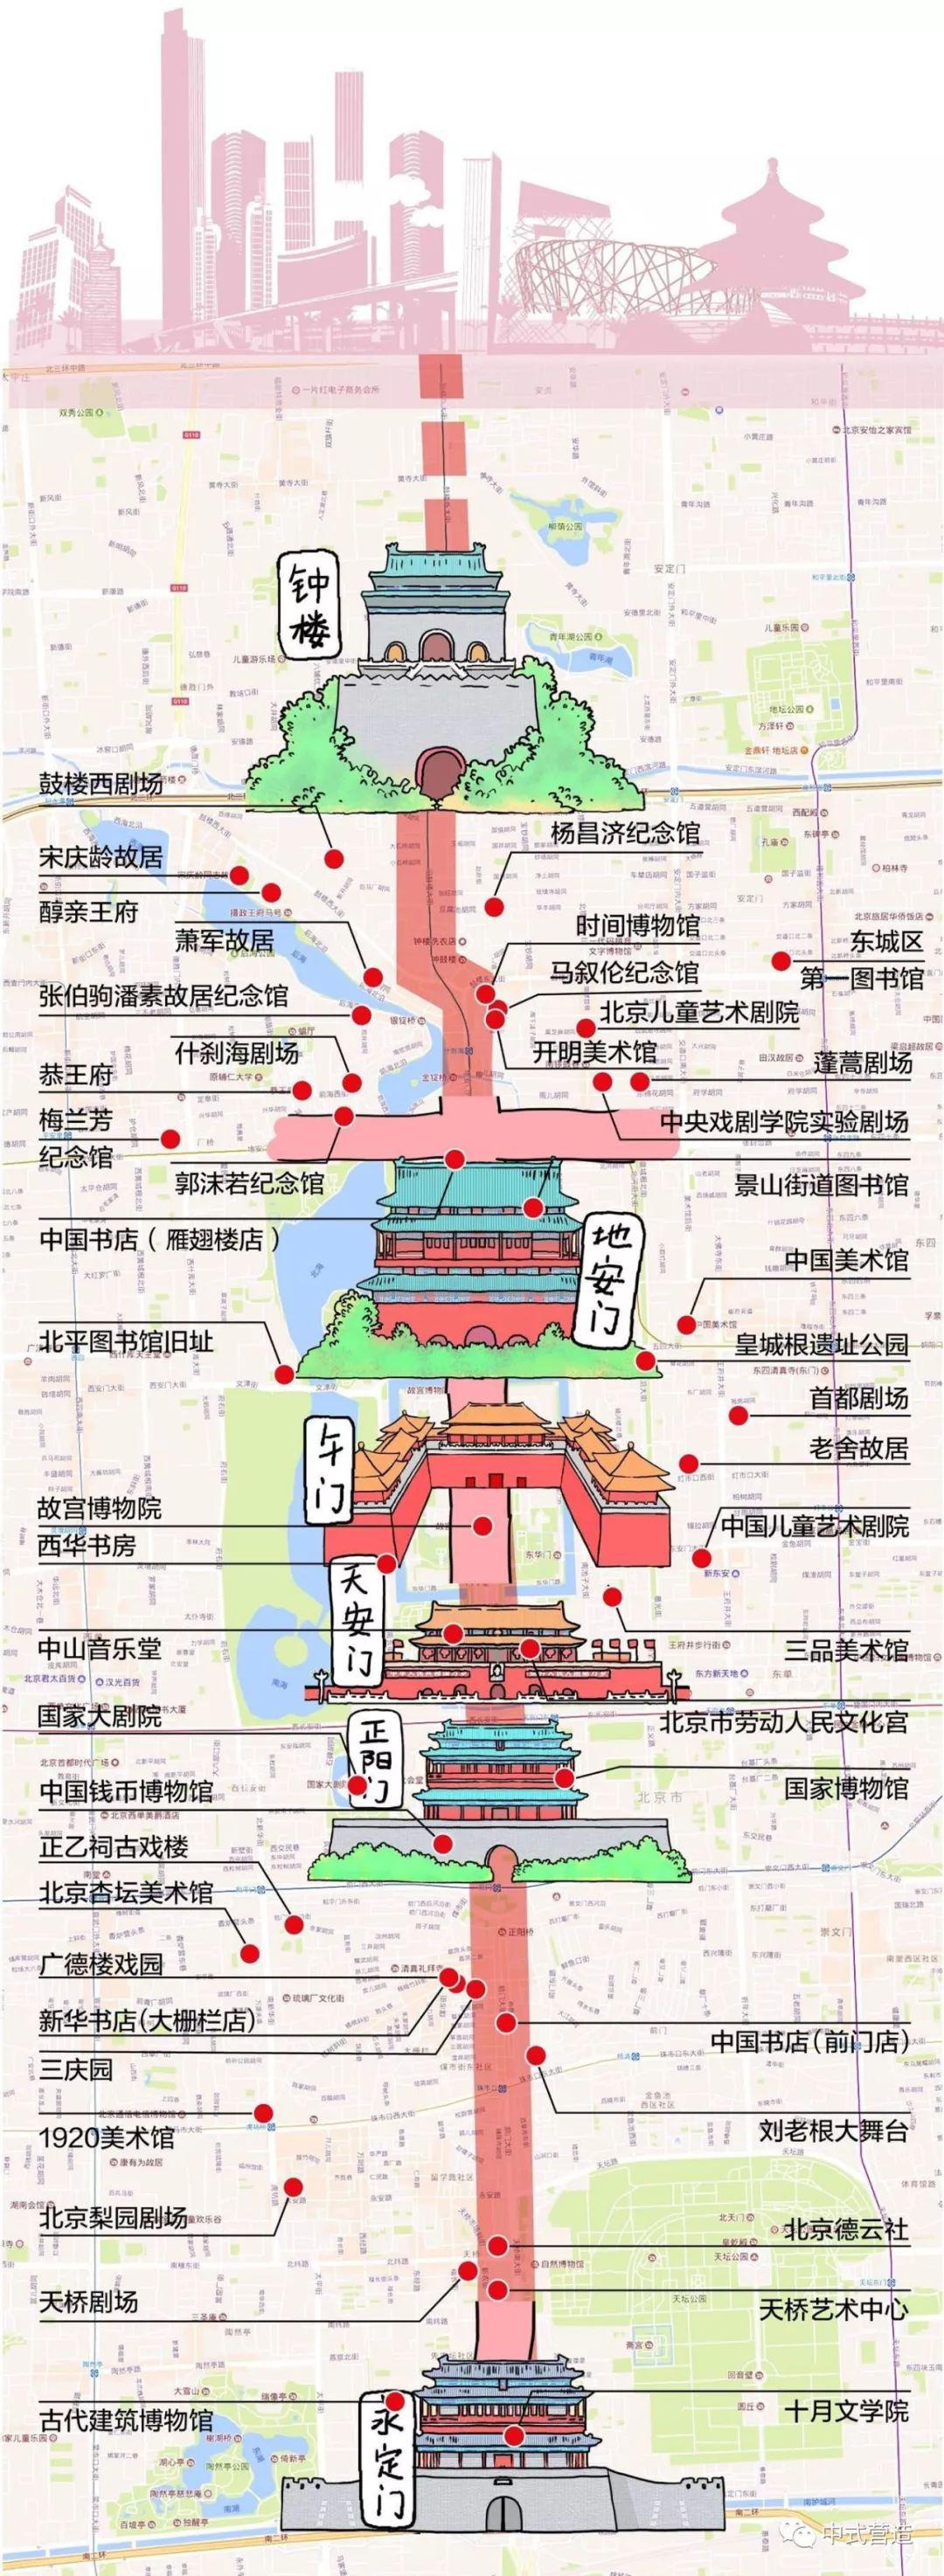 北京中轴线既是北京城市框架的脊梁,又是展现北京历史文化名城的主线